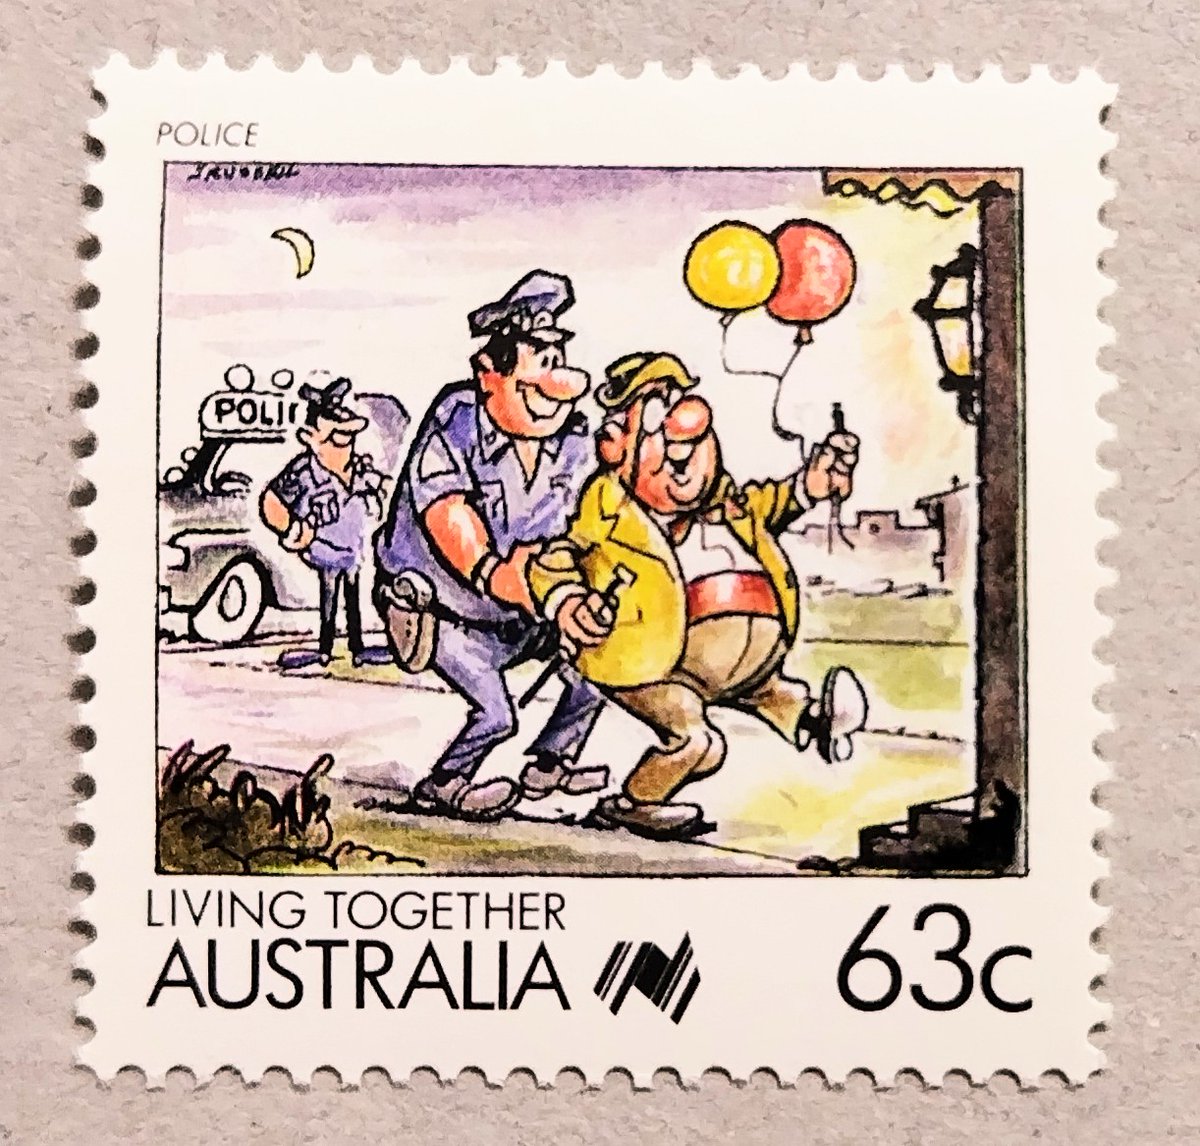 たまには柔らかいテーマとして、1988年に🇦🇺オーストラリアが発行した『共生（LIVING TOGETHER）』が題材の愛らしい切手を紹介。#外国切手 #philately #Australia

●THE…